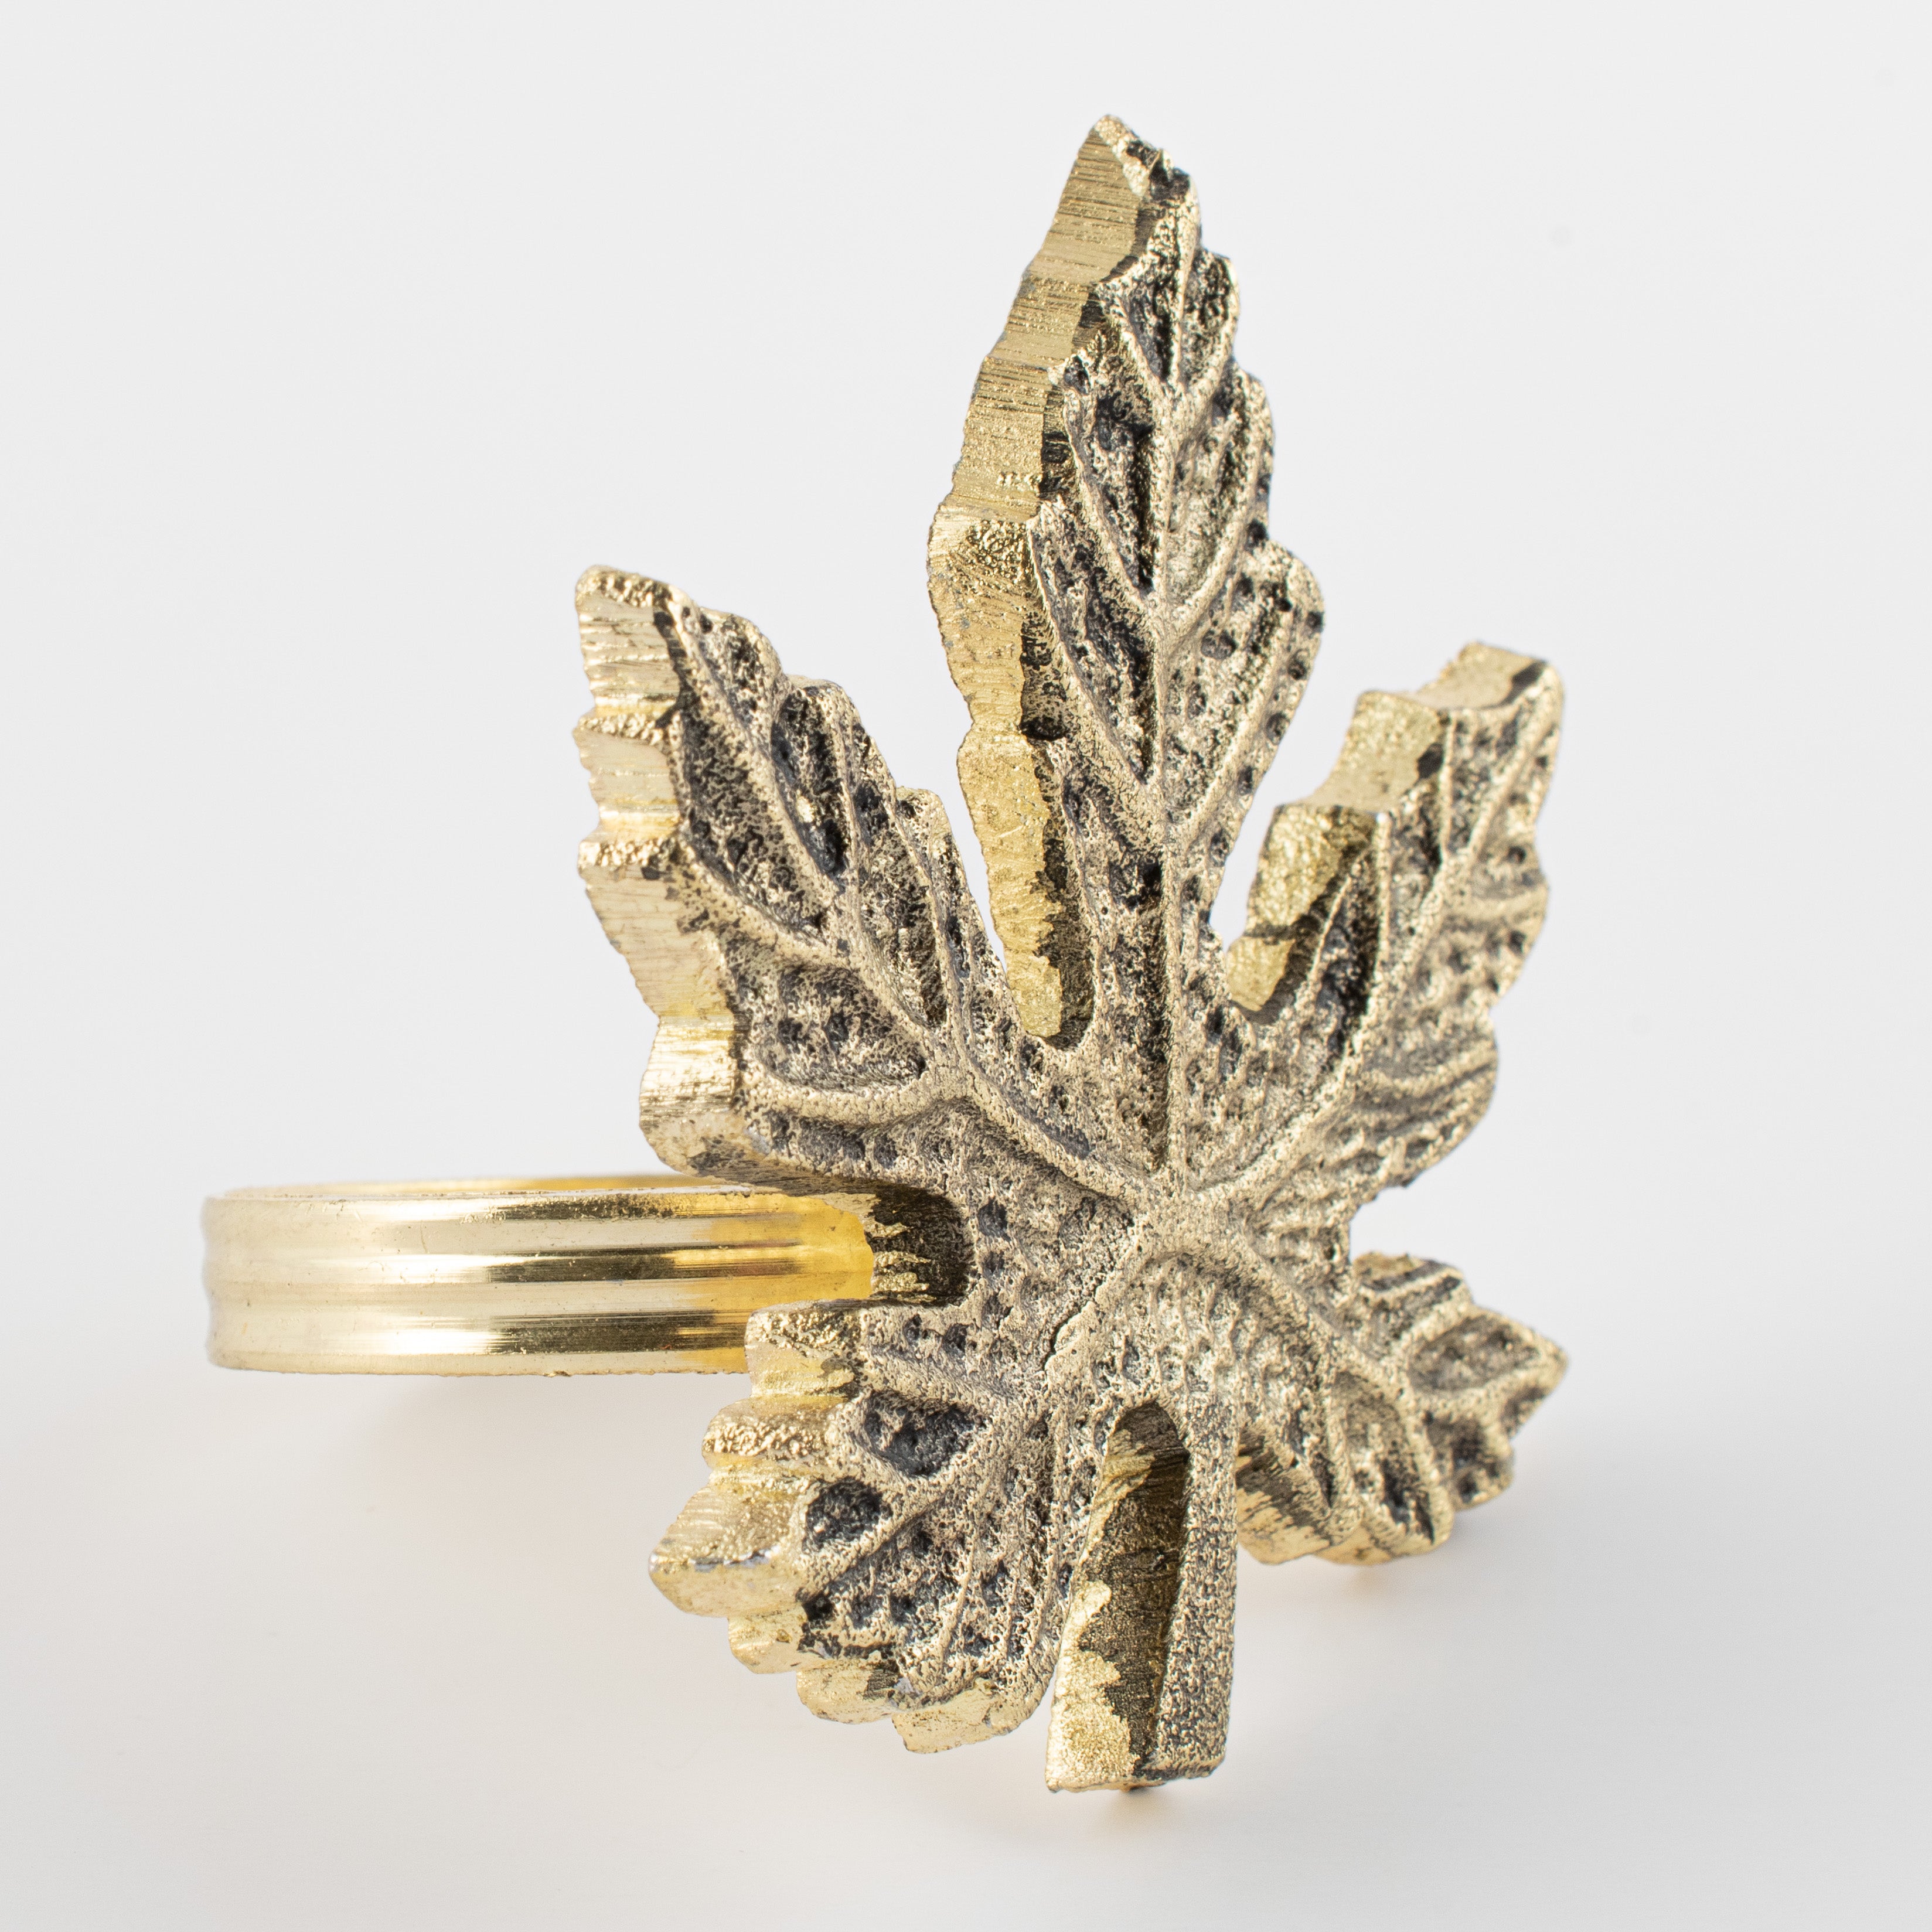 Gold Leaves Napkin Ring  Style Me Pretty - Gartner Studios